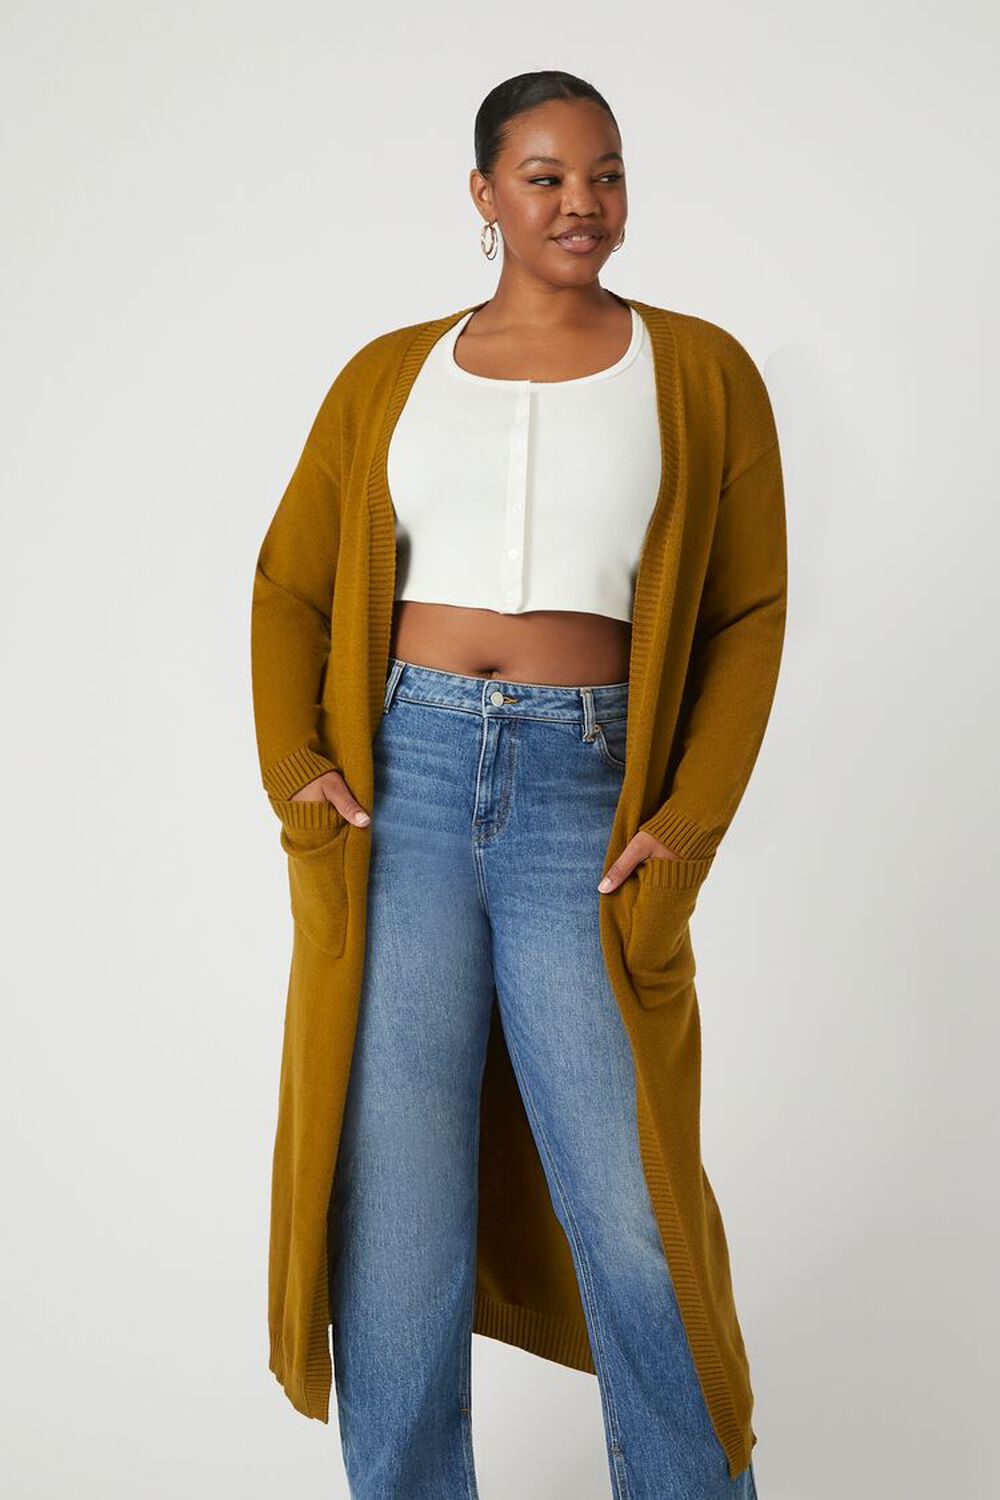 CIGAR Plus Size Longline Cardigan Sweater, image 2